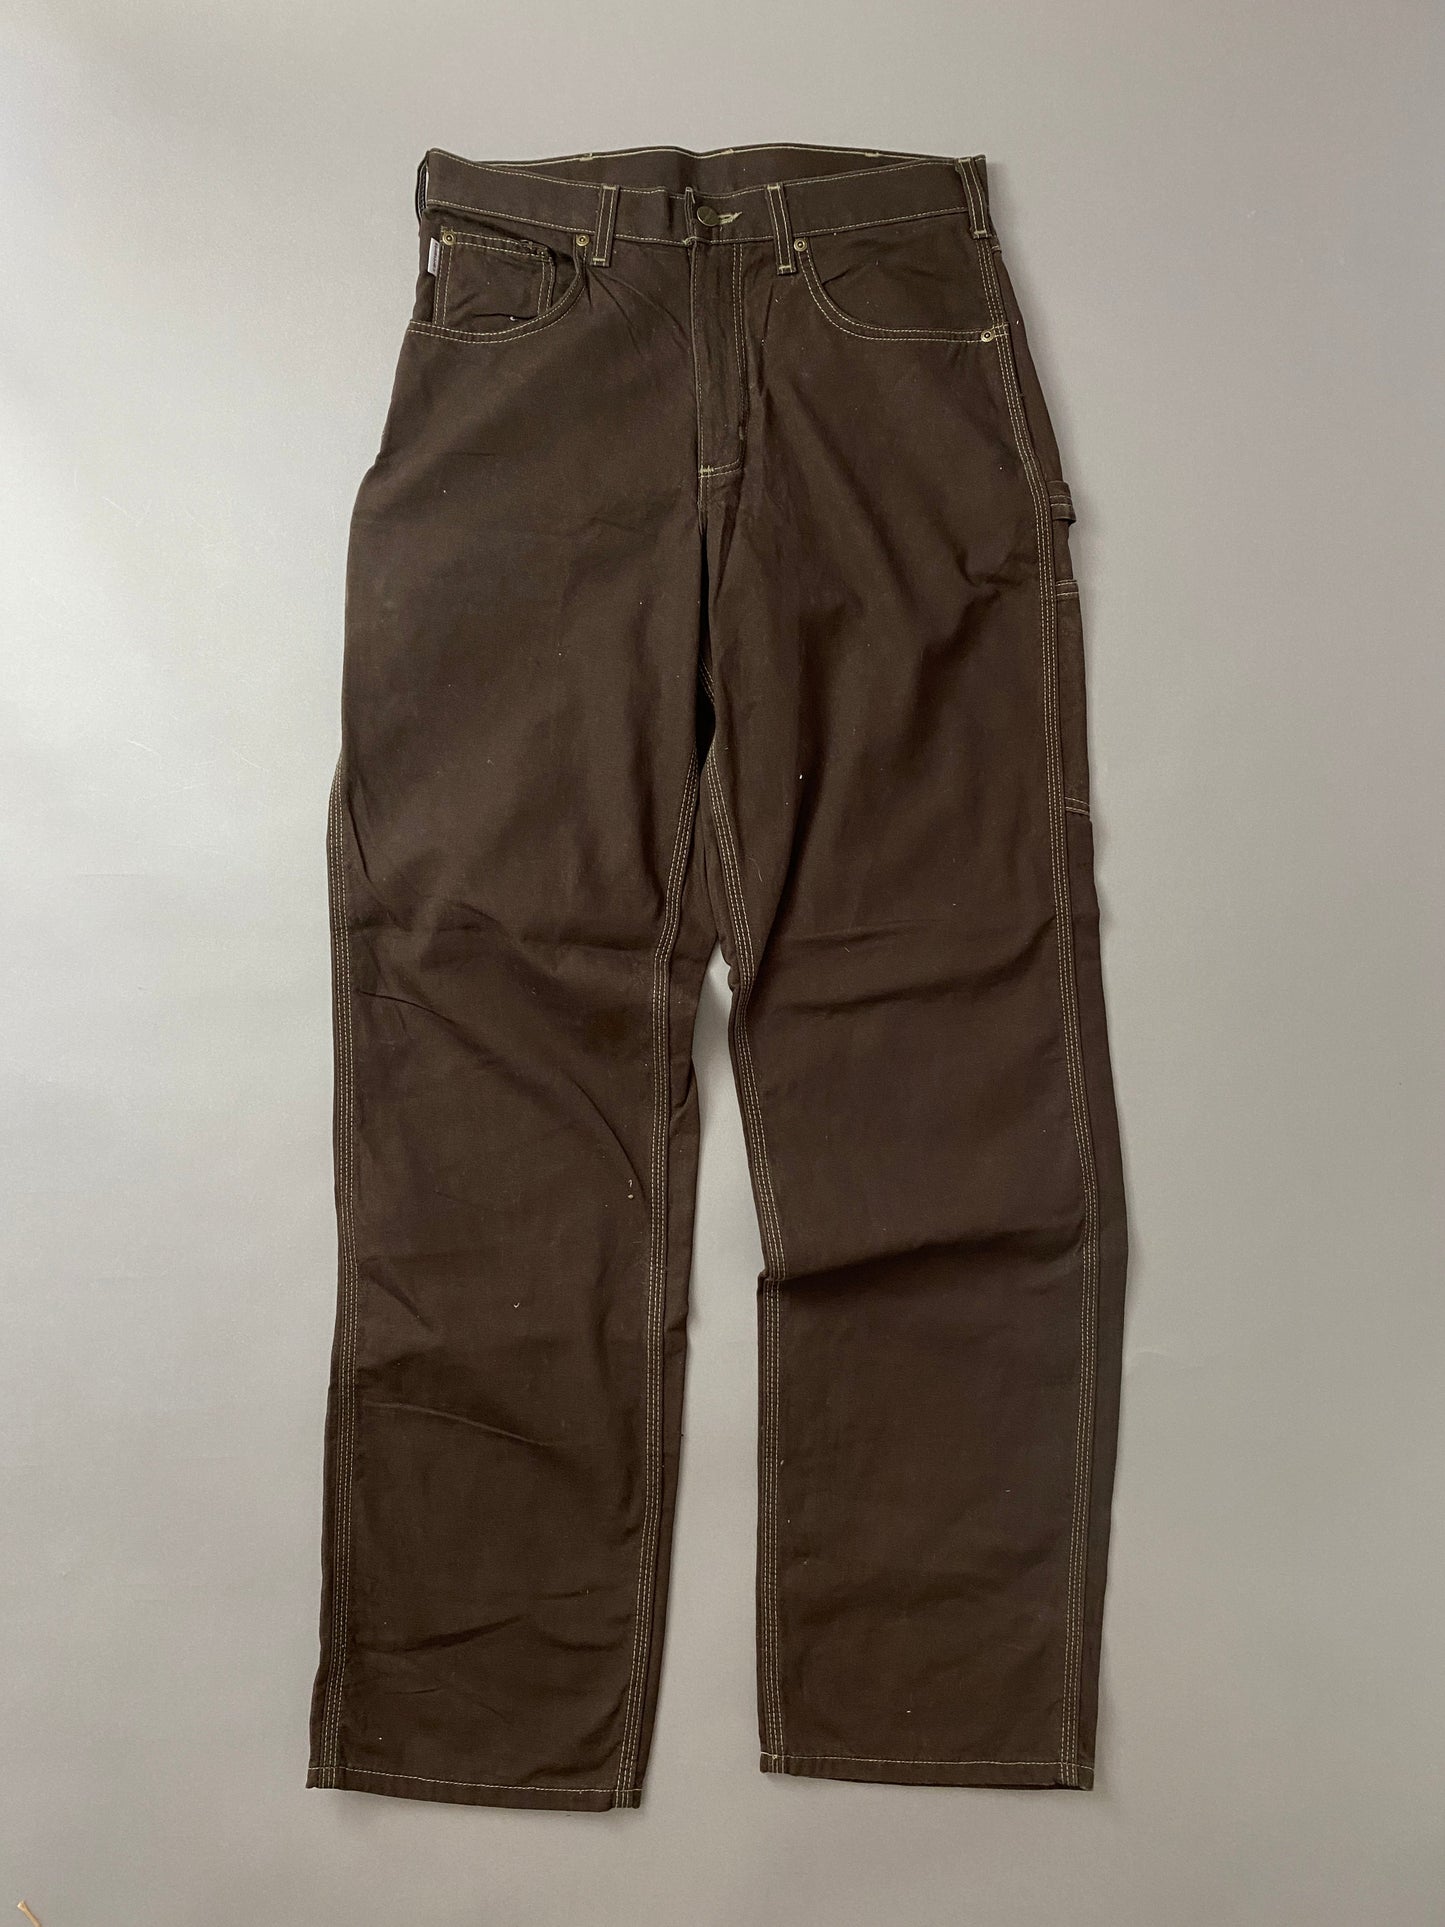 Pantalones Carhartt Carpenter - 30 x 30